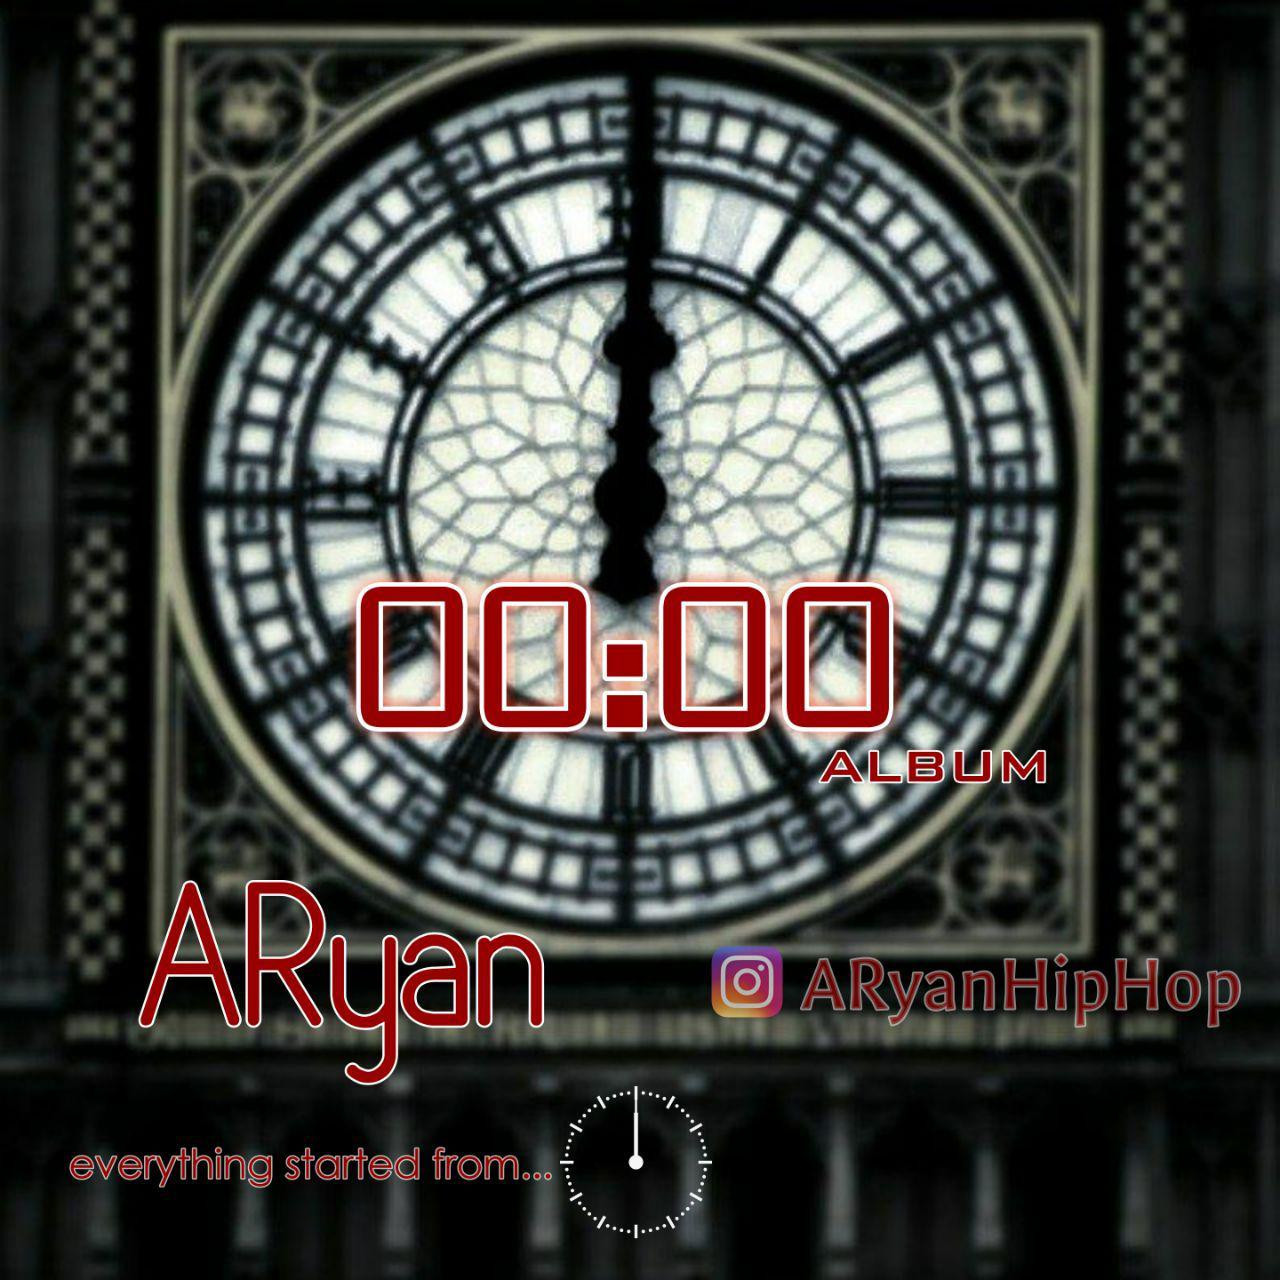 ARyan - 00:00 (Album)